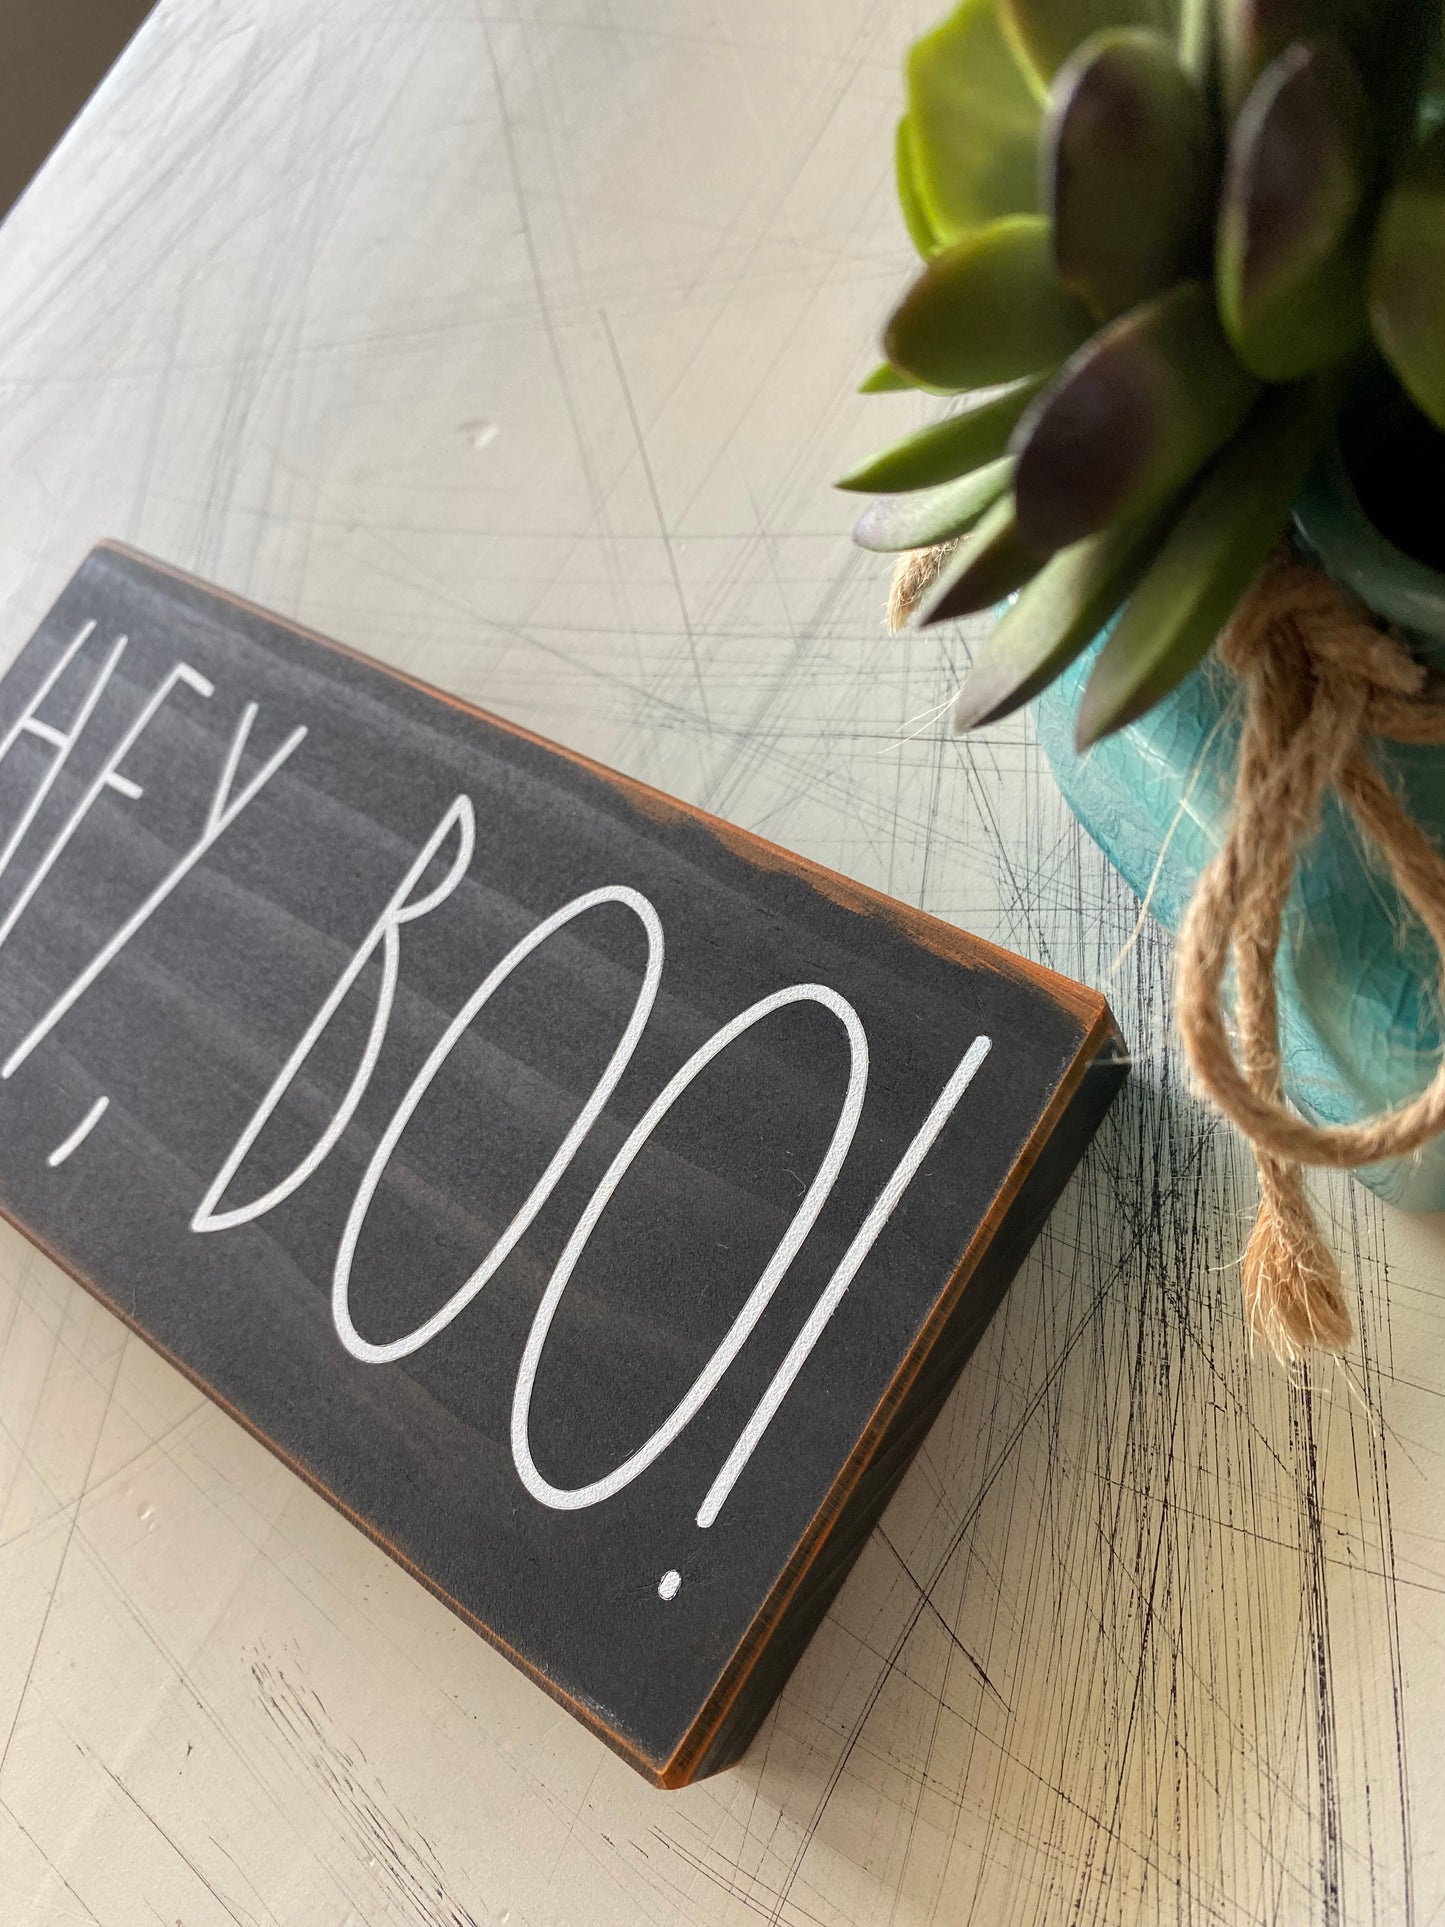 Hey, boo! - Halloween handmade mini wood sign